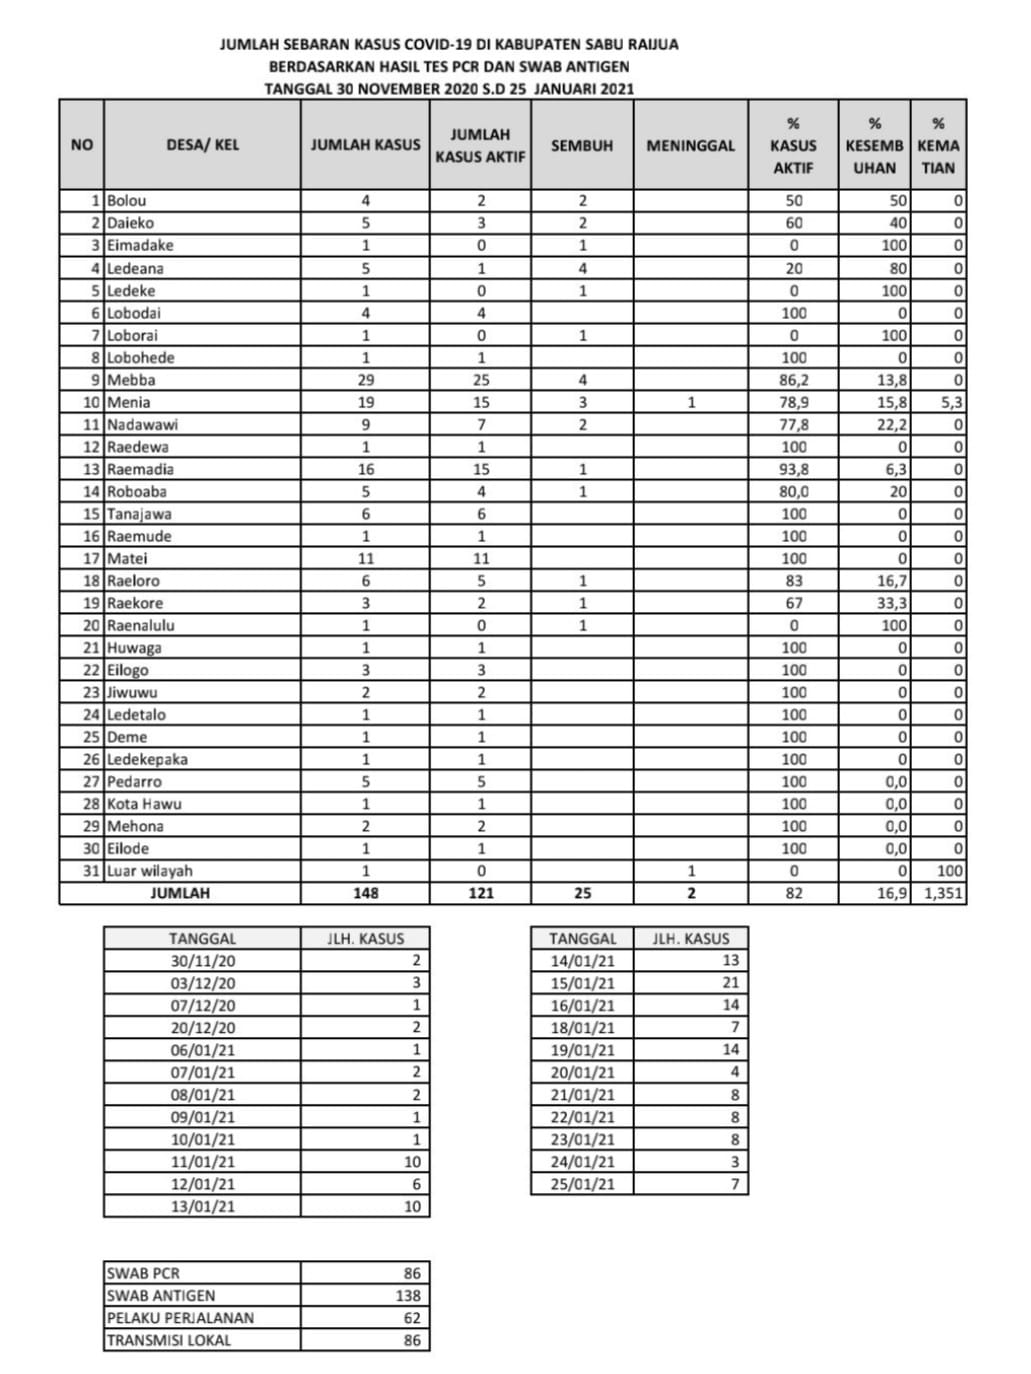 Data Sebaran Jumlah kasus COVID-19 Update 25 Januari 2021